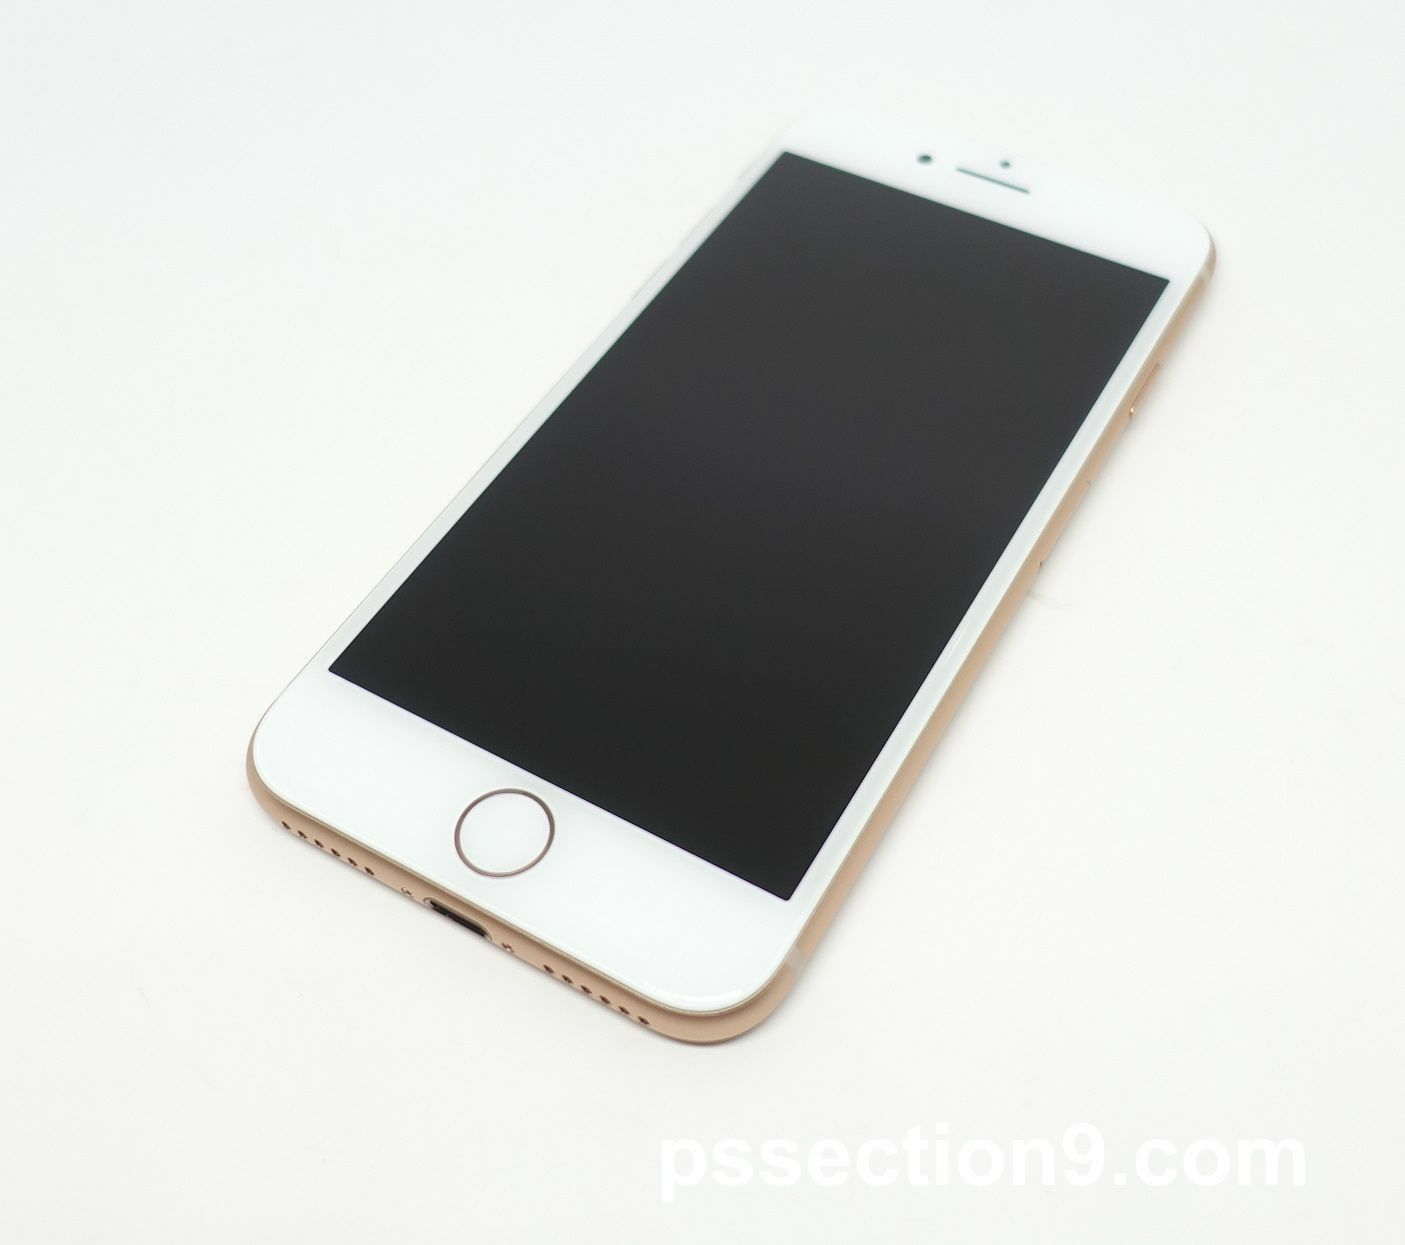 au iPhone 8 64GB ゴールドレビュー。iPhone 7 ゴールドに比べるとiPhone 8はピンクゴールドに見えて微妙